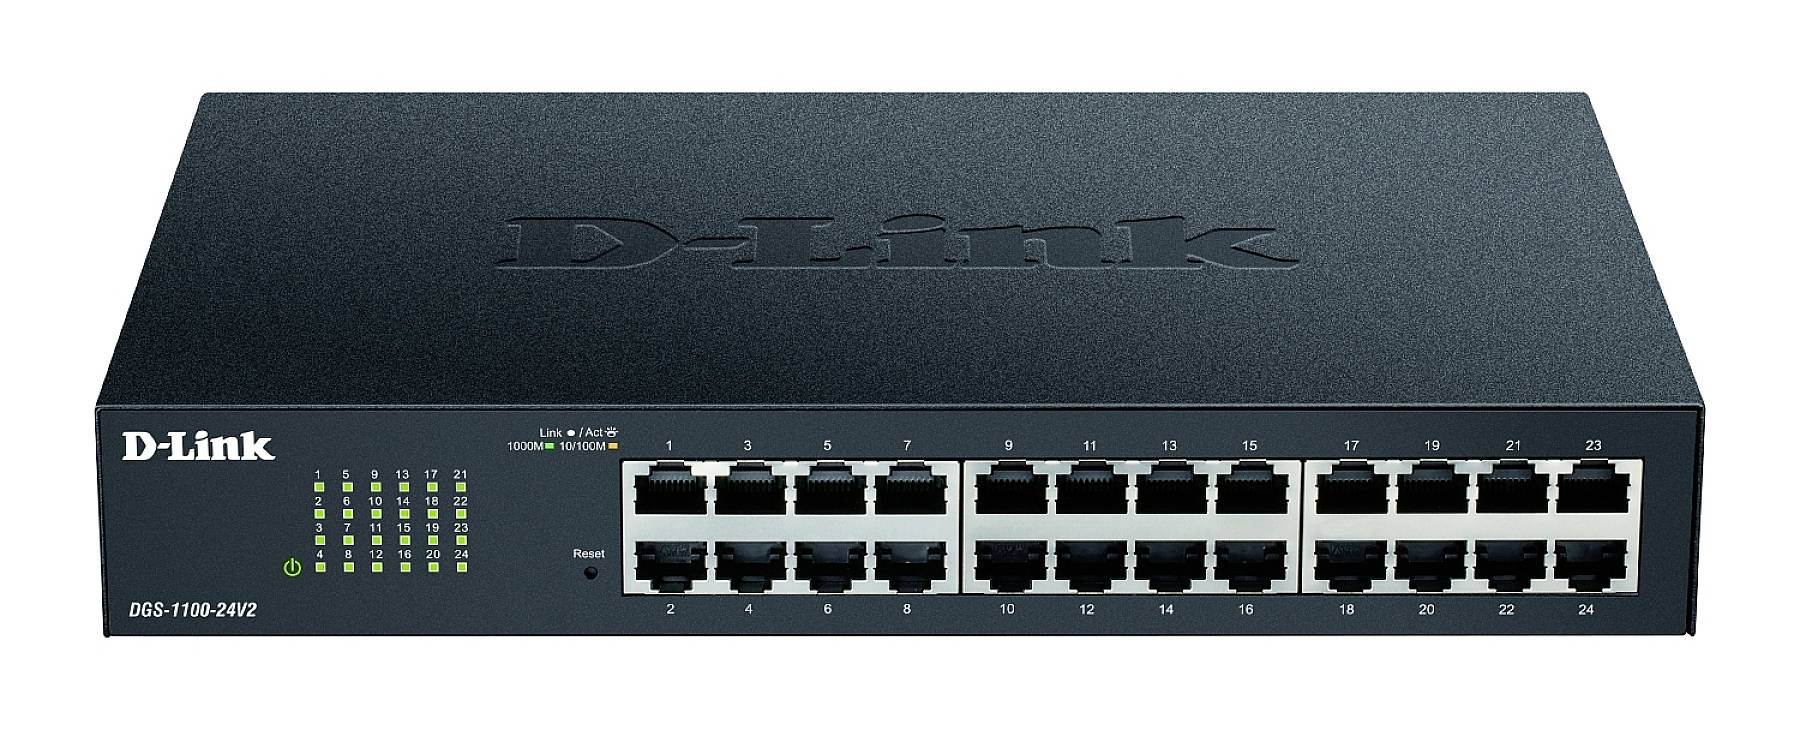 D-LINK 24-Port Layer2 Smart Gigabit Switch24x 10/100/1000Mbit/s TP (RJ-45) Port802.3x Flow Control,